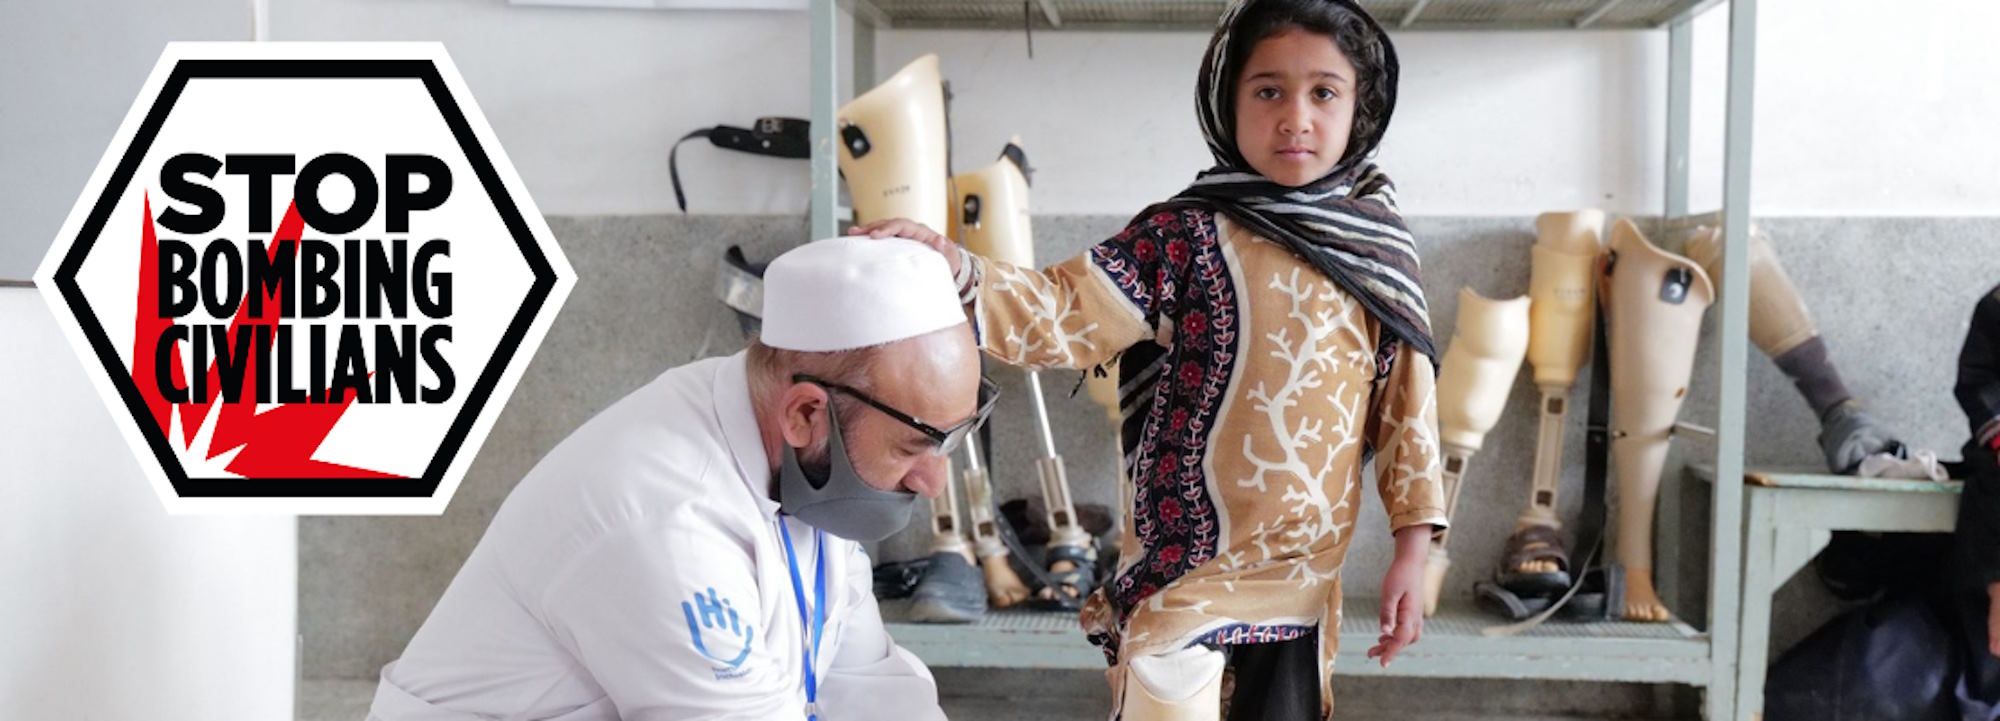 Ein kleines Mädchen in afghanischer Kleidung und ein HI-Physiotherapeut